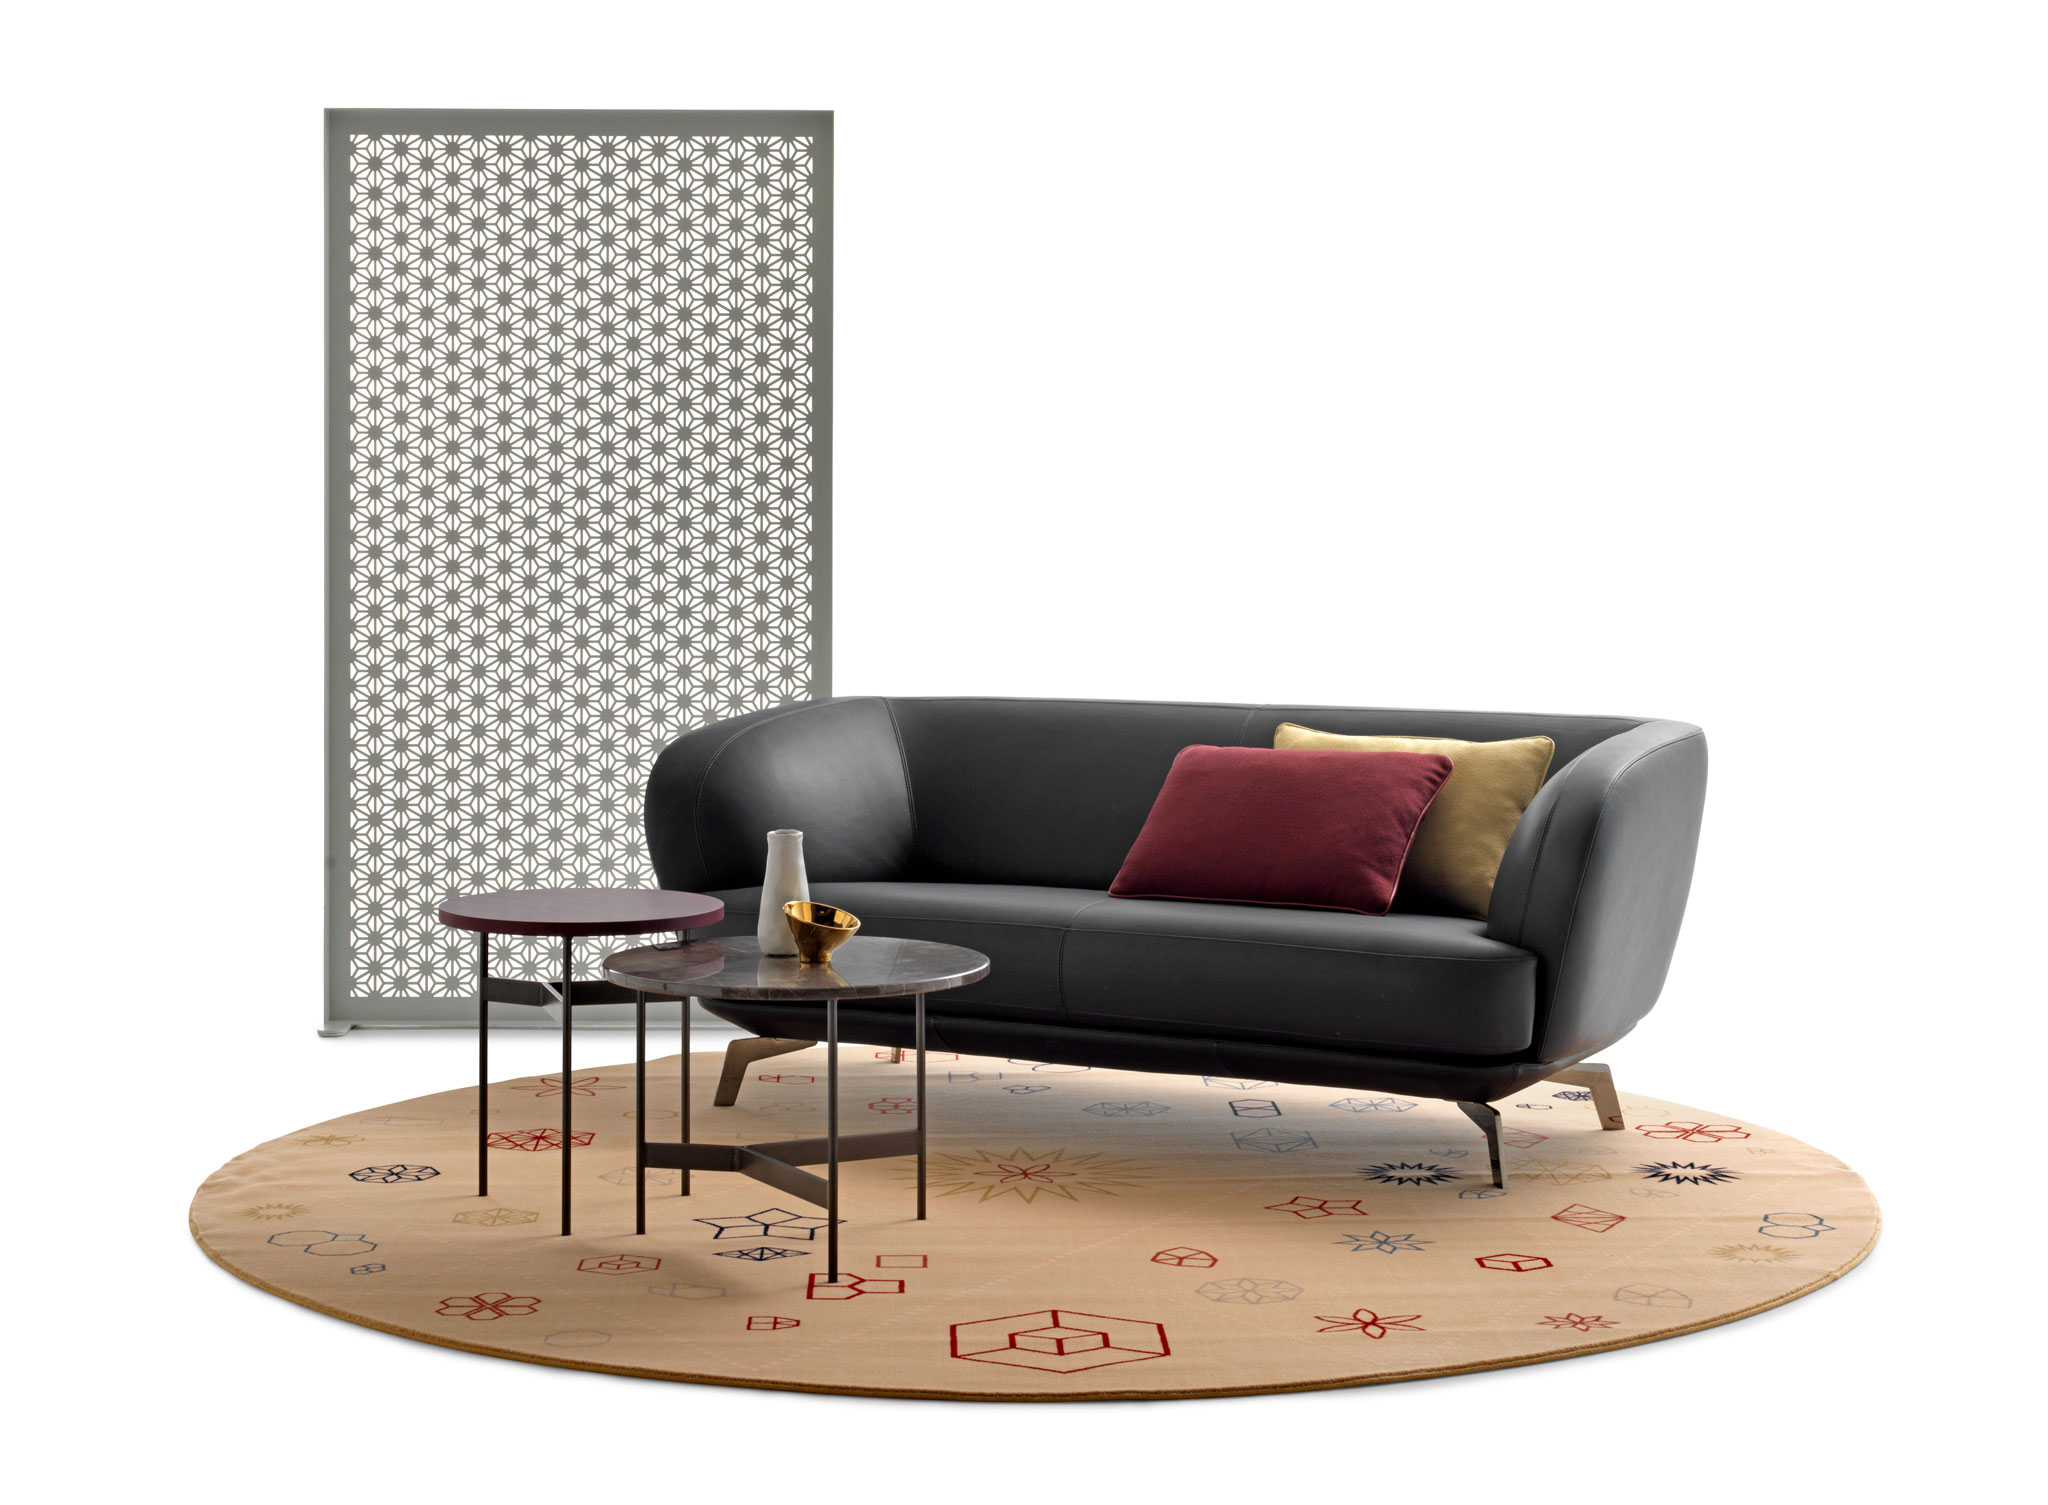 FLINT Sofa von Leolux